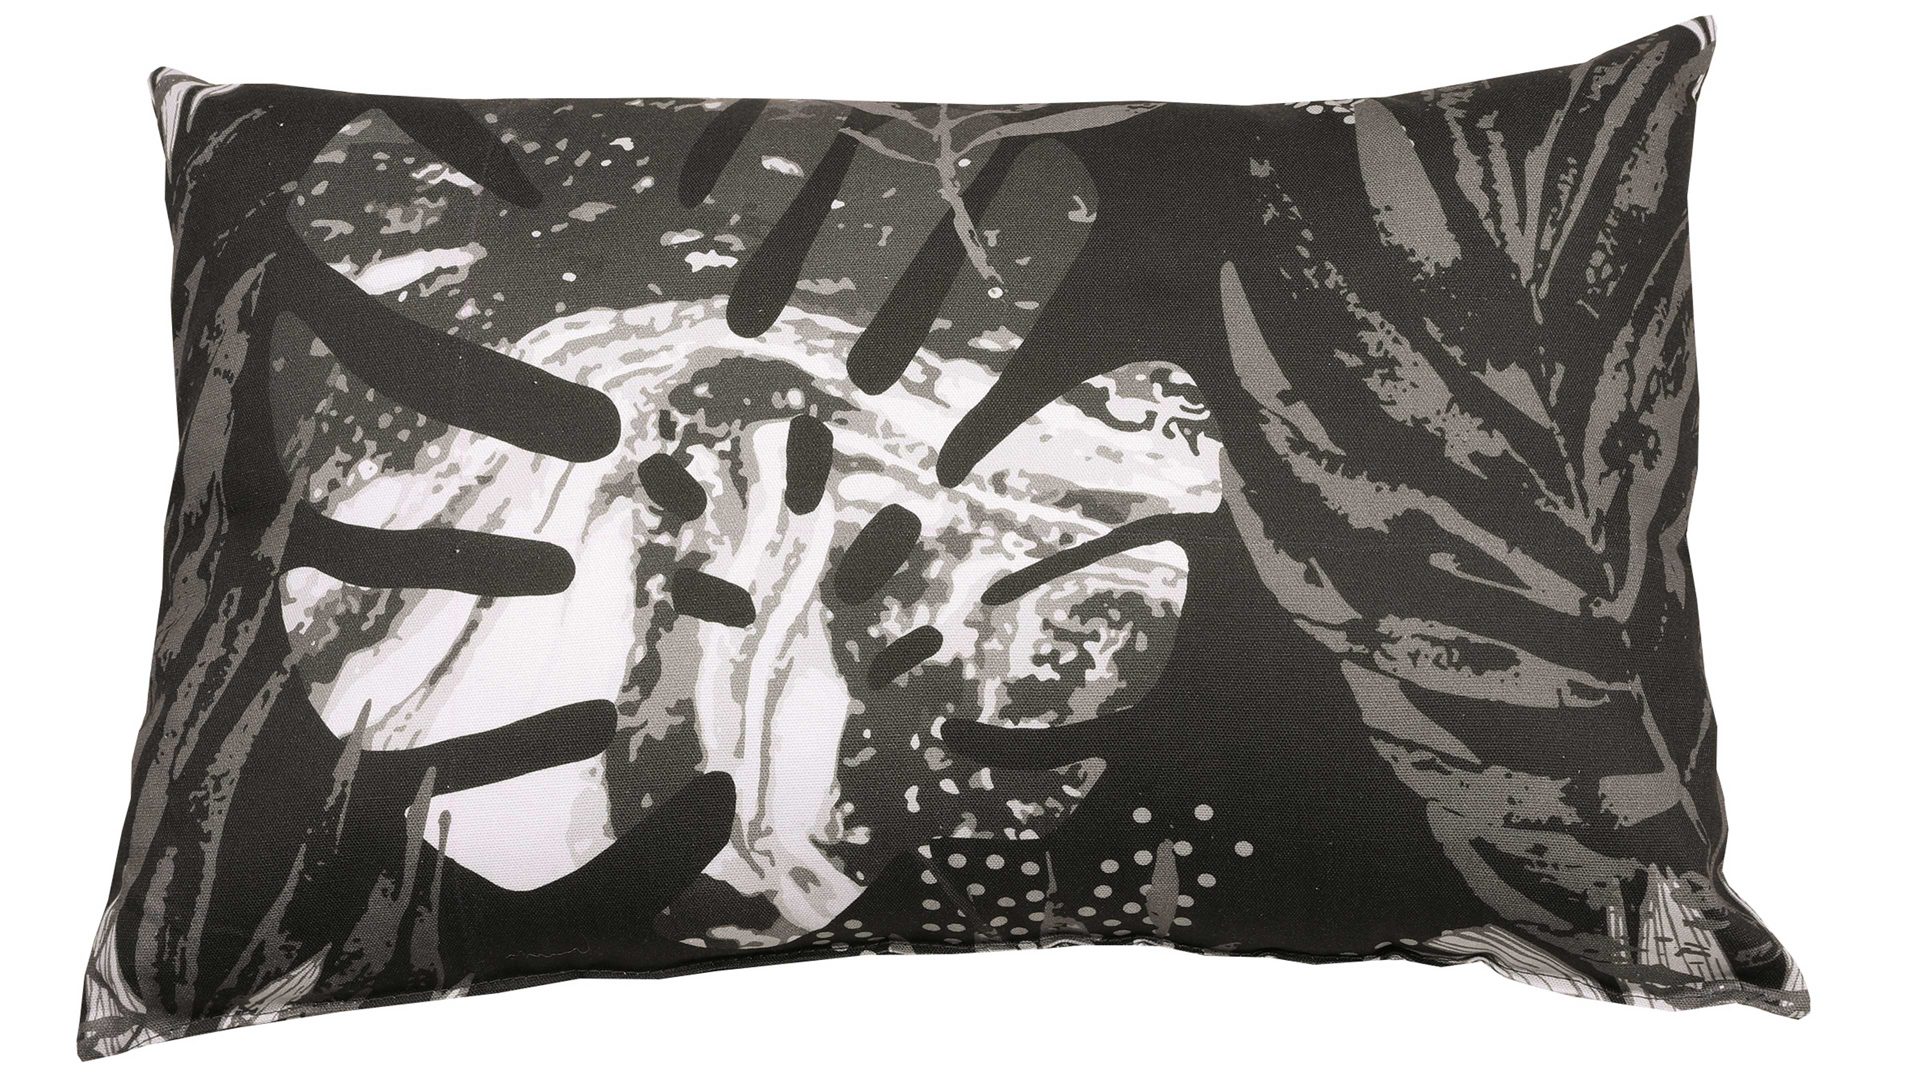 Einzelkissen Go-de textilgesellschaft aus Stoff in Schwarz GO-DE Textil-Serie 19 - Zierkissen schwarz-weißes Blättermotiv - ca. 40 x 60 cm